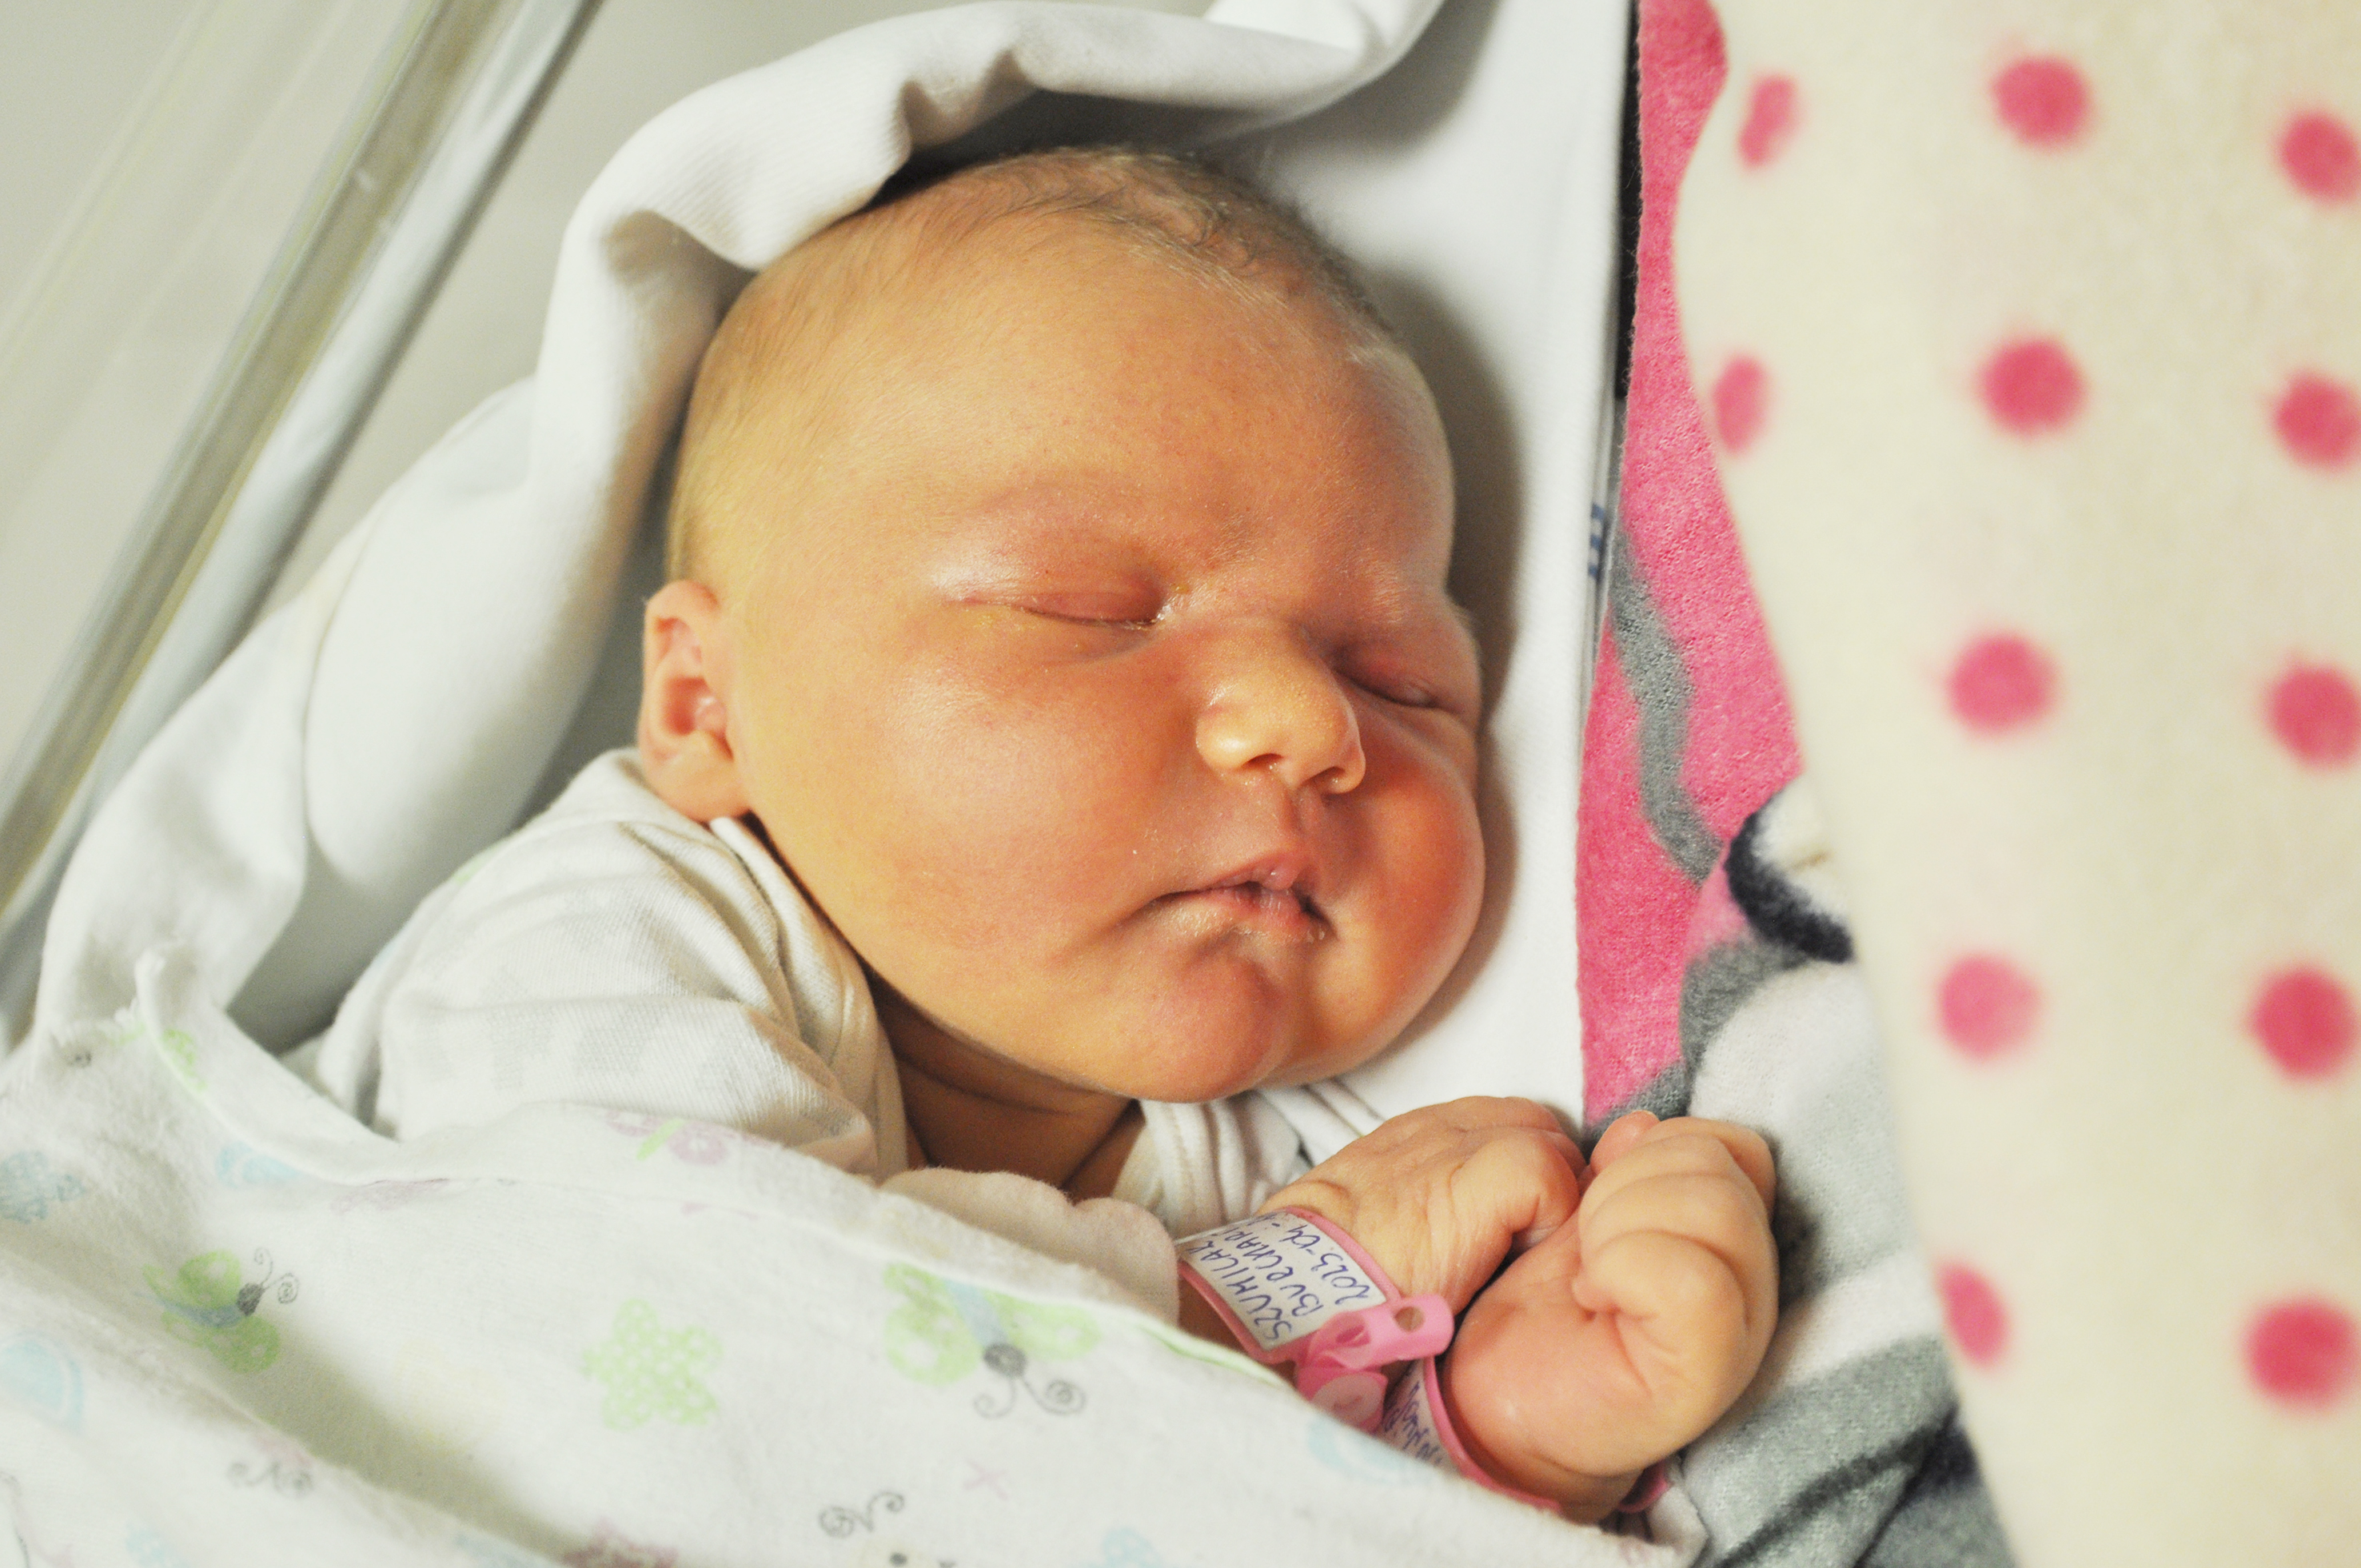 Lena Szumilak jest nową raciborzanką. Urodzona 24 kwietnia dziewczynka ważyła 3910 g i mierzyła 54 cm. Mama Joanna i tato Andrzej cieszą się swym pierwszym dzieckiem.